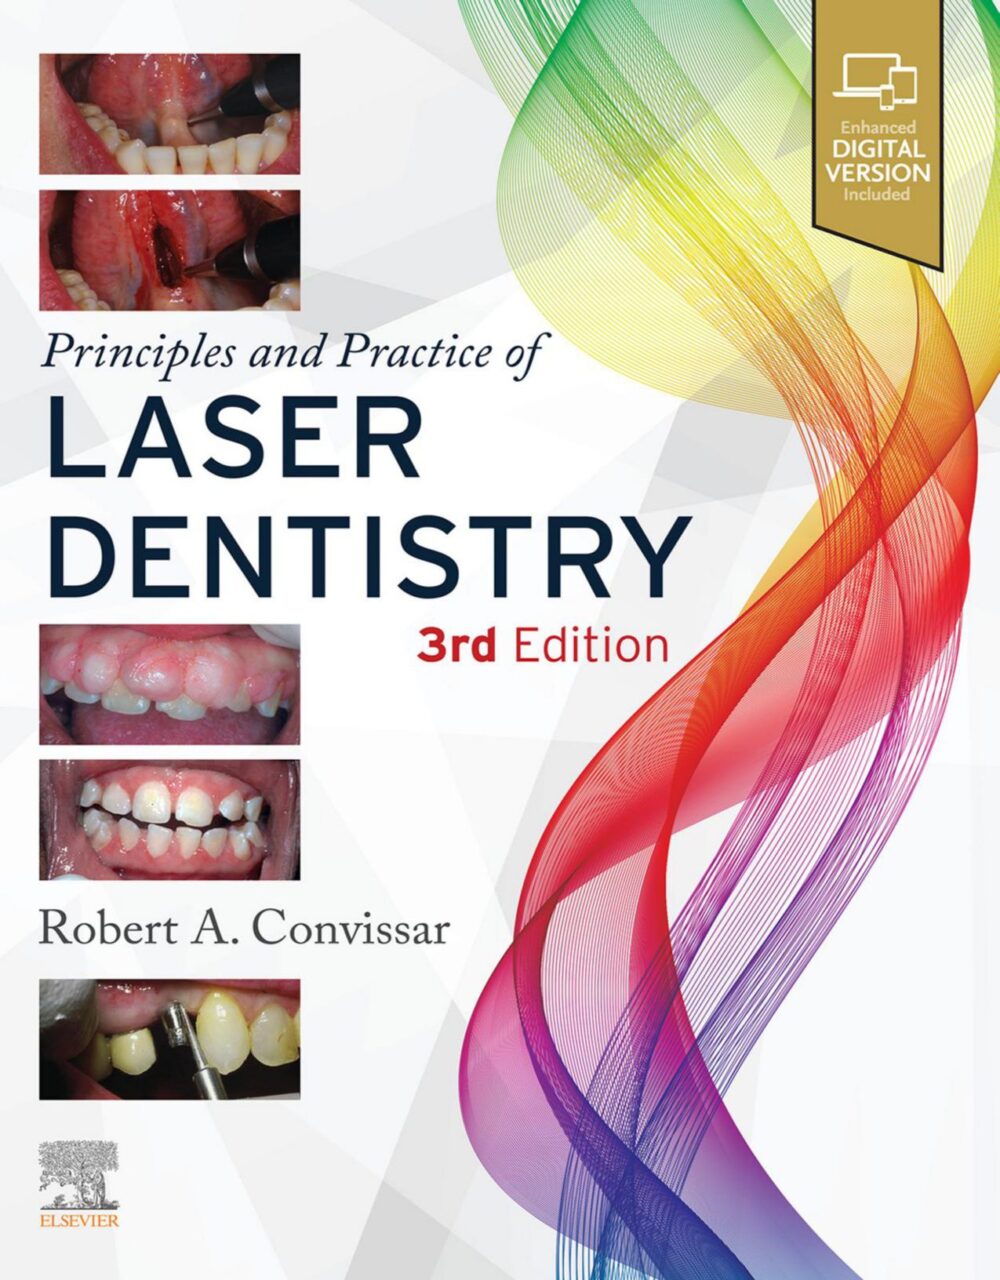 עקרונות ופרקטיקה של רפואת שיניים בלייזר מהדורה שלישית